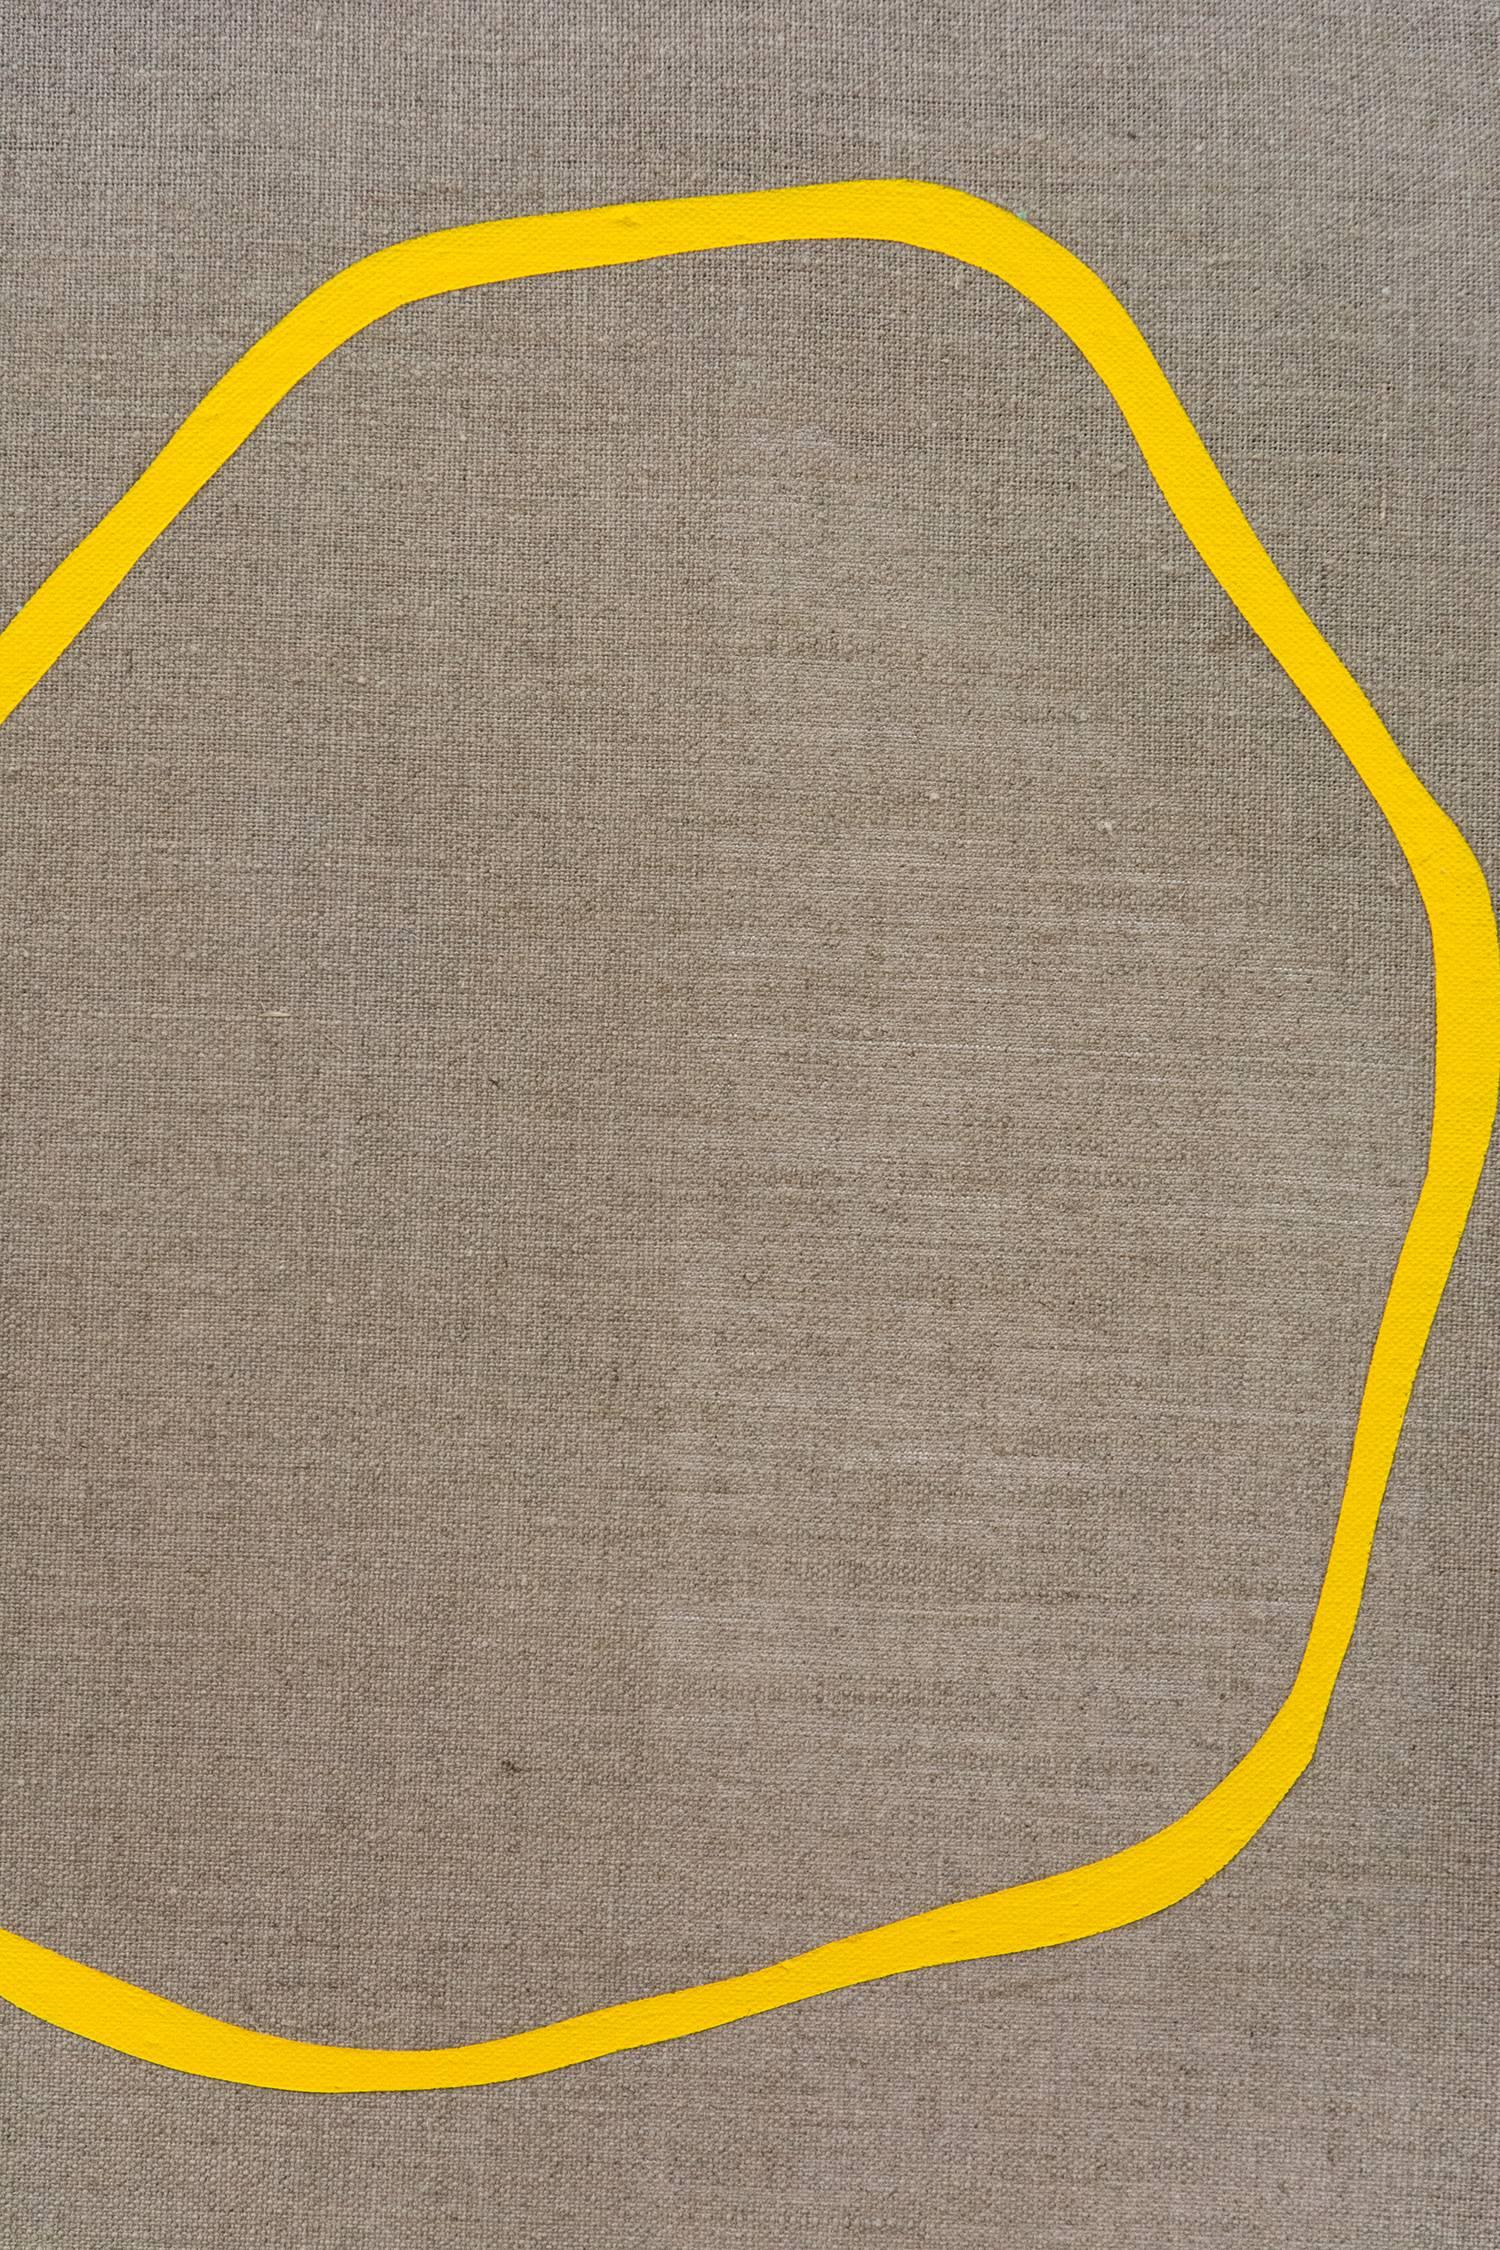 Split Green Shape mit langer gelber Linie - farbenfrohe, abstrakte Formen auf Leinwand (Zeitgenössisch), Painting, von Aron Hill